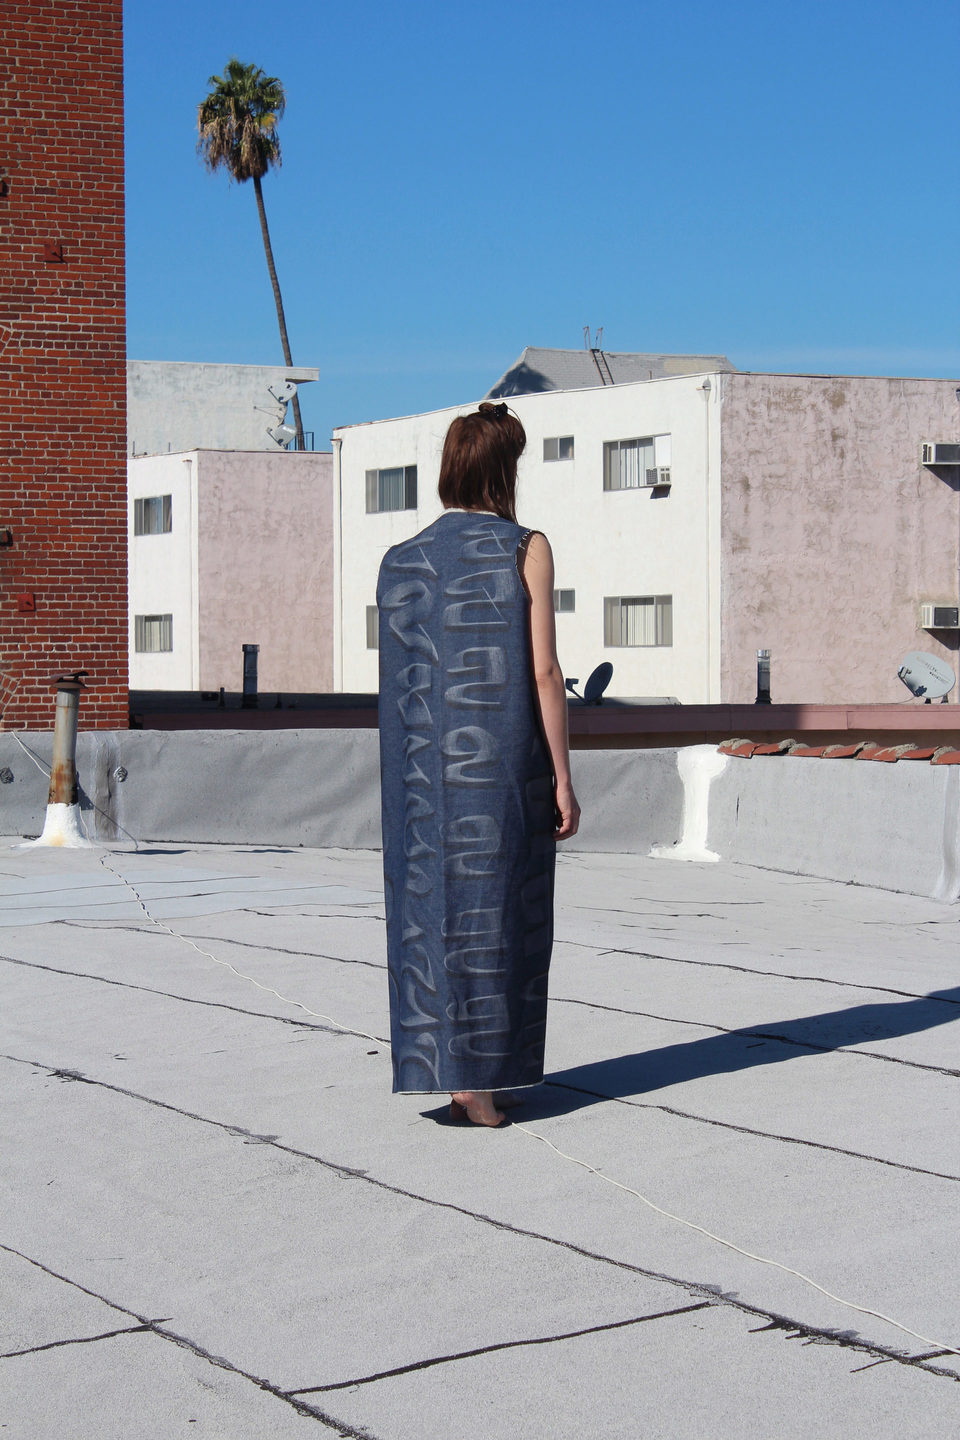 S standing on bitumen rooftop (Los Feliz, LA)